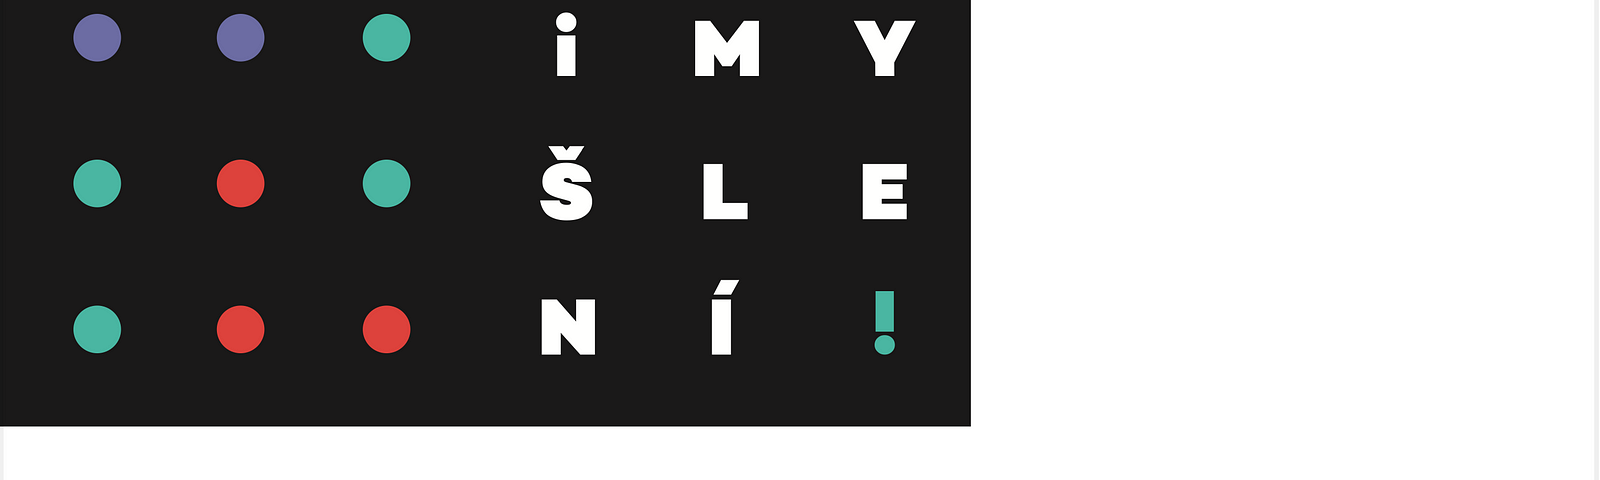 https://www.imysleni.cz/images/vystupy_media/Logo_s_claimem_barevn%C3%A9_pozitiv_CMYK.pdf